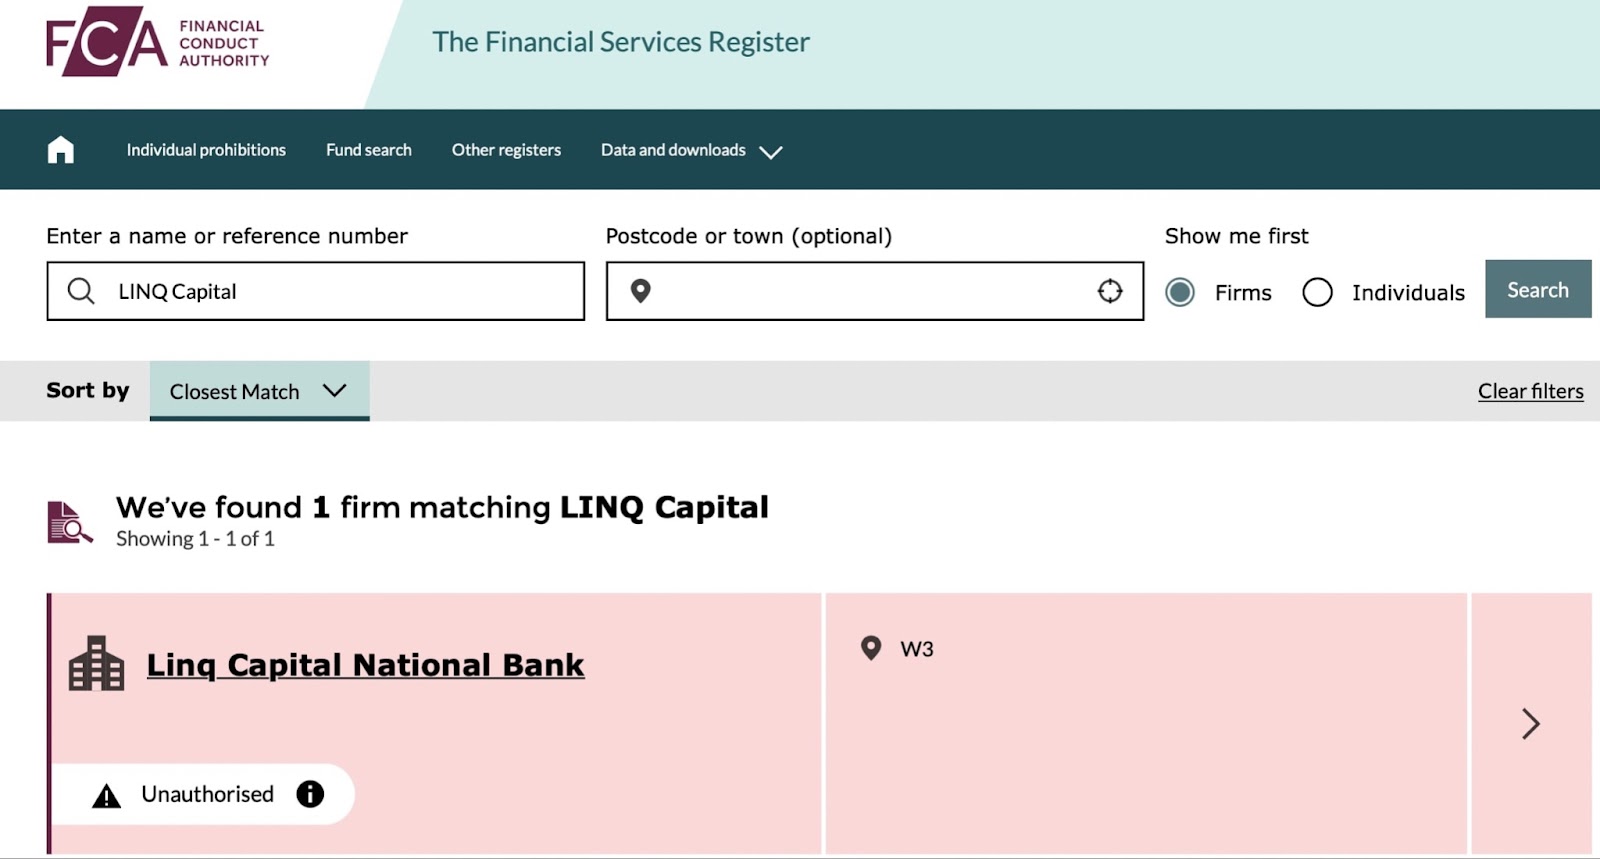 LINQ Capital: отзывы клиентов о работе компании в 2024 году